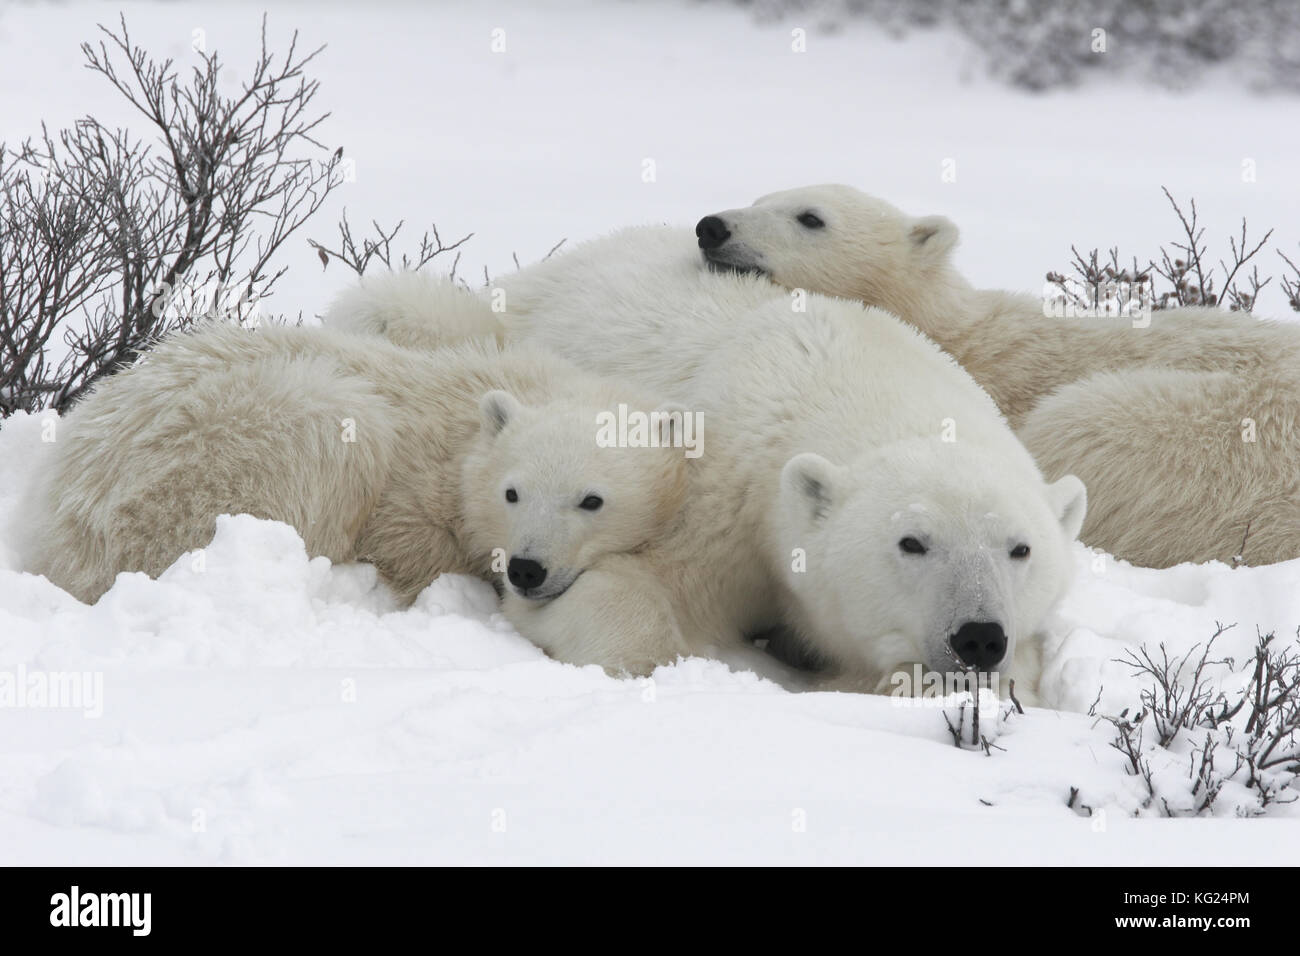 Eine extreme Nahaufnahme eines Eisbären zu den Fotografen bei der Jagd im Schnee der arktischen Tundra. Stockfoto